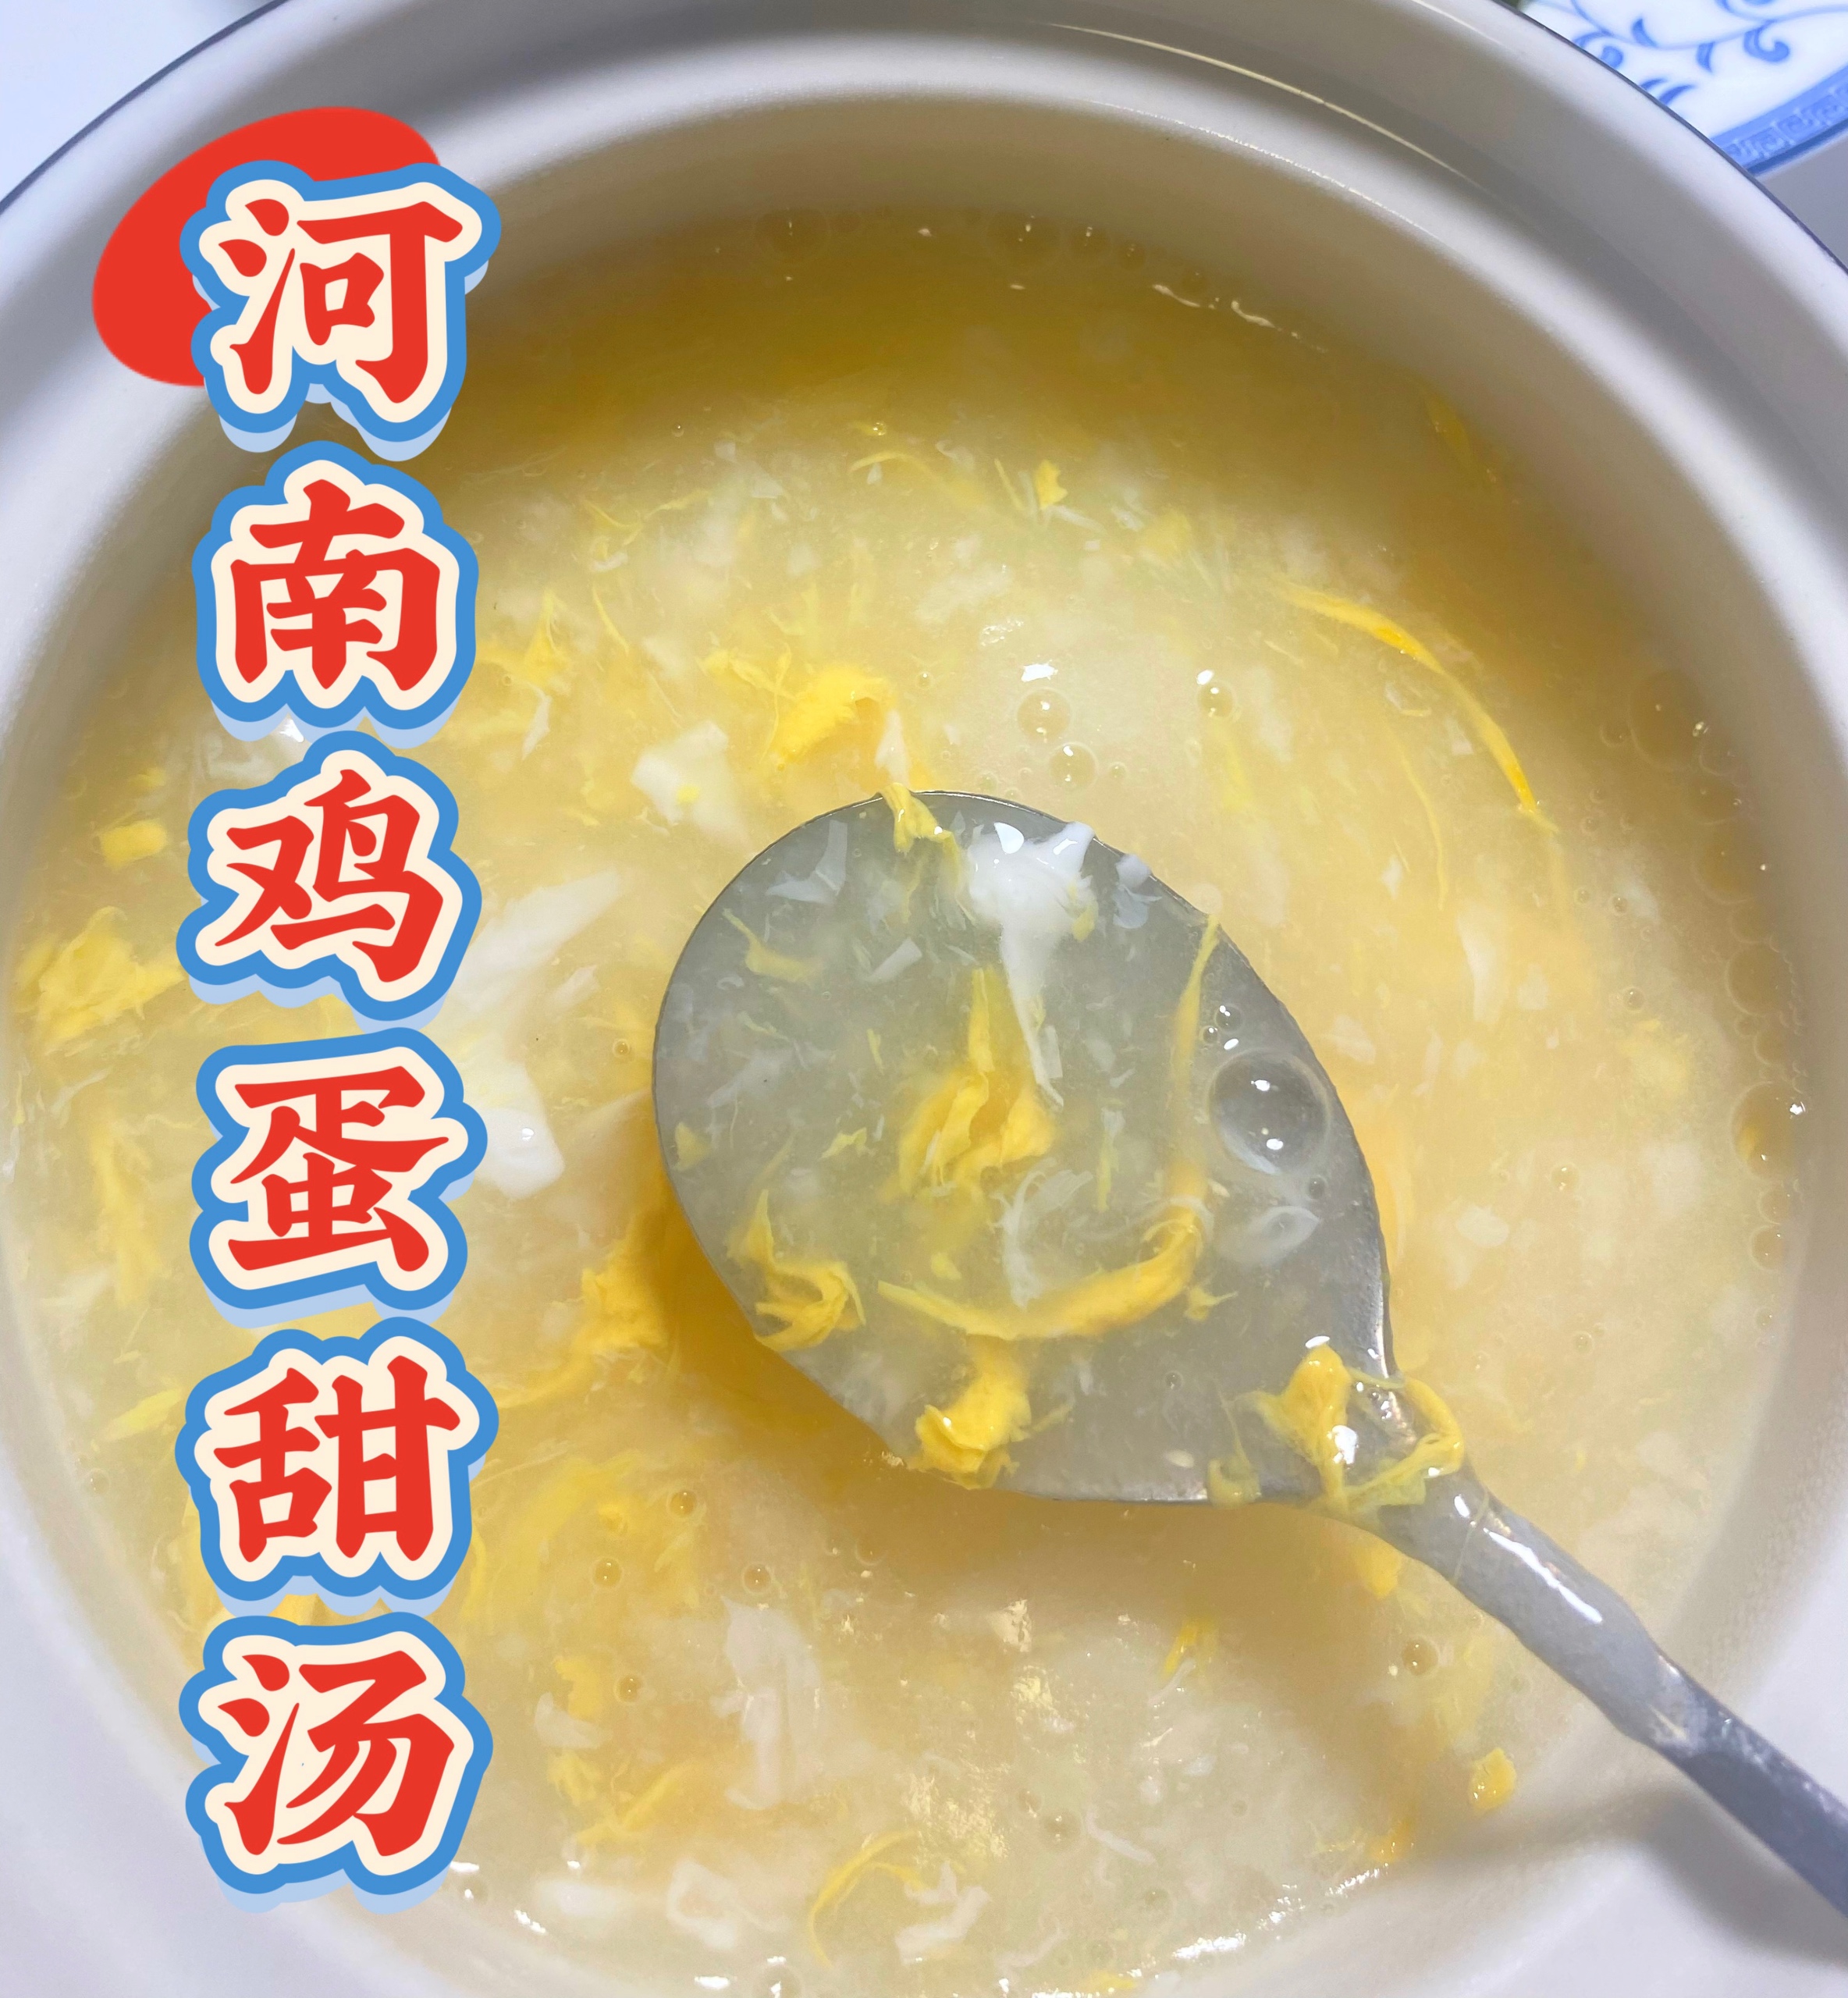 河南人清热必喝的鸡蛋甜汤的做法